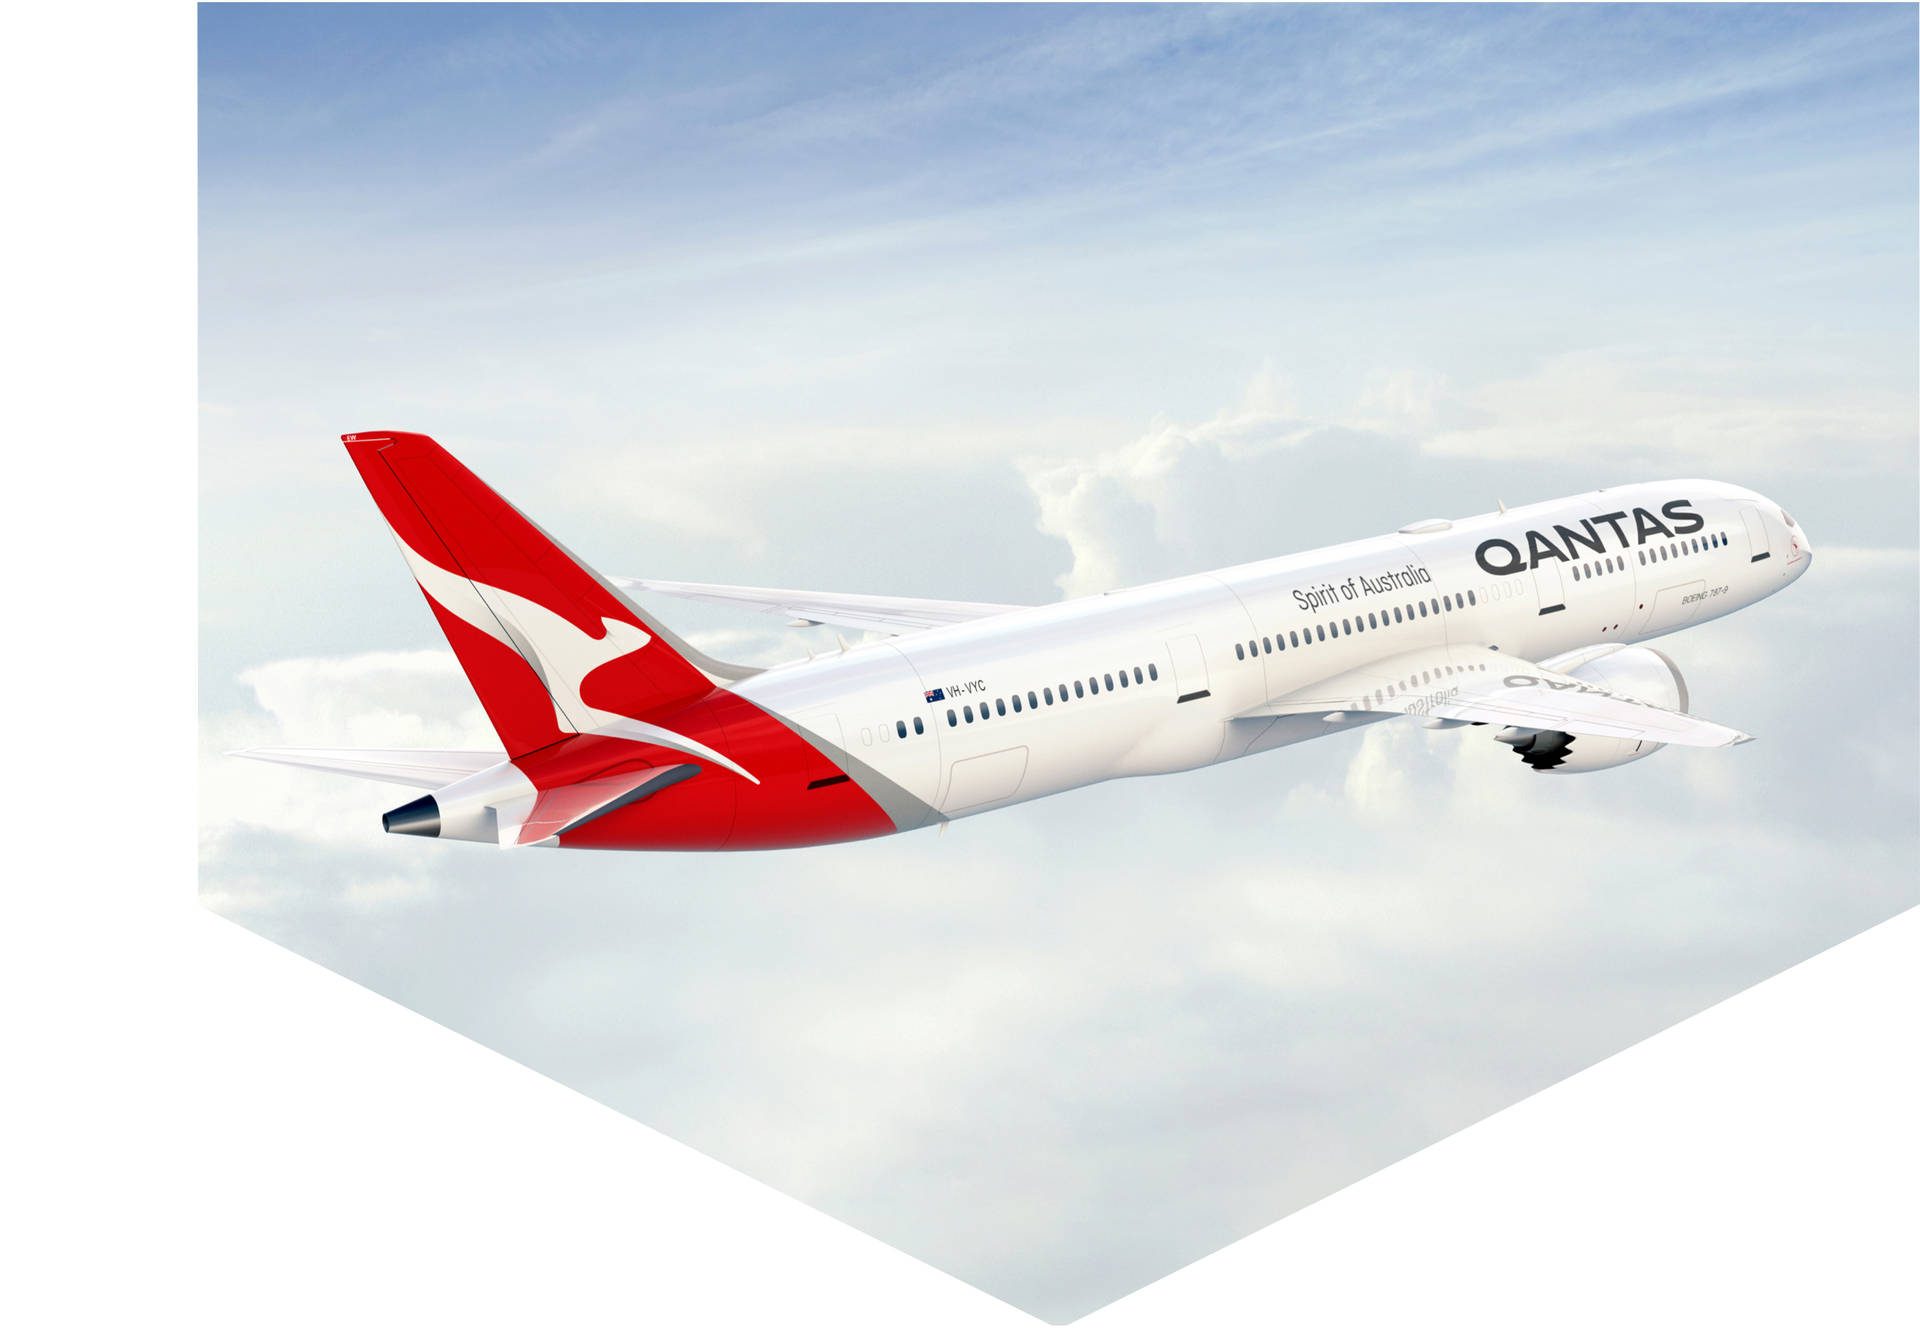 Qantasflugzeug Weißes Ästhetisches Design Wallpaper